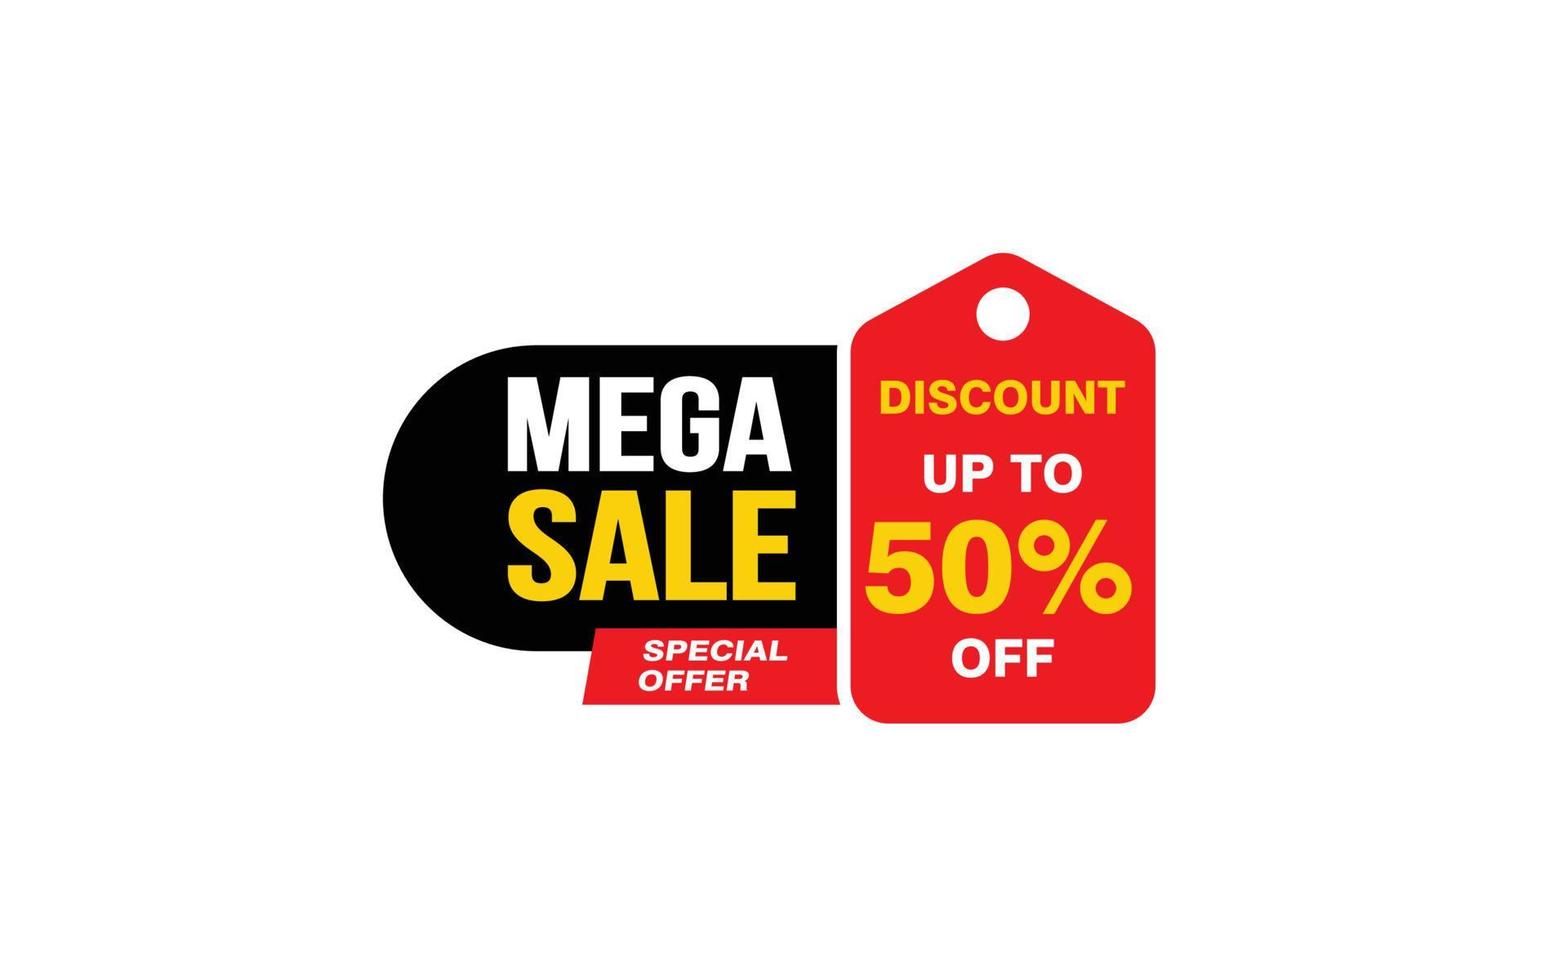 Oferta de mega venda de 50%, liberação, layout de banner de promoção com estilo de adesivo. vetor